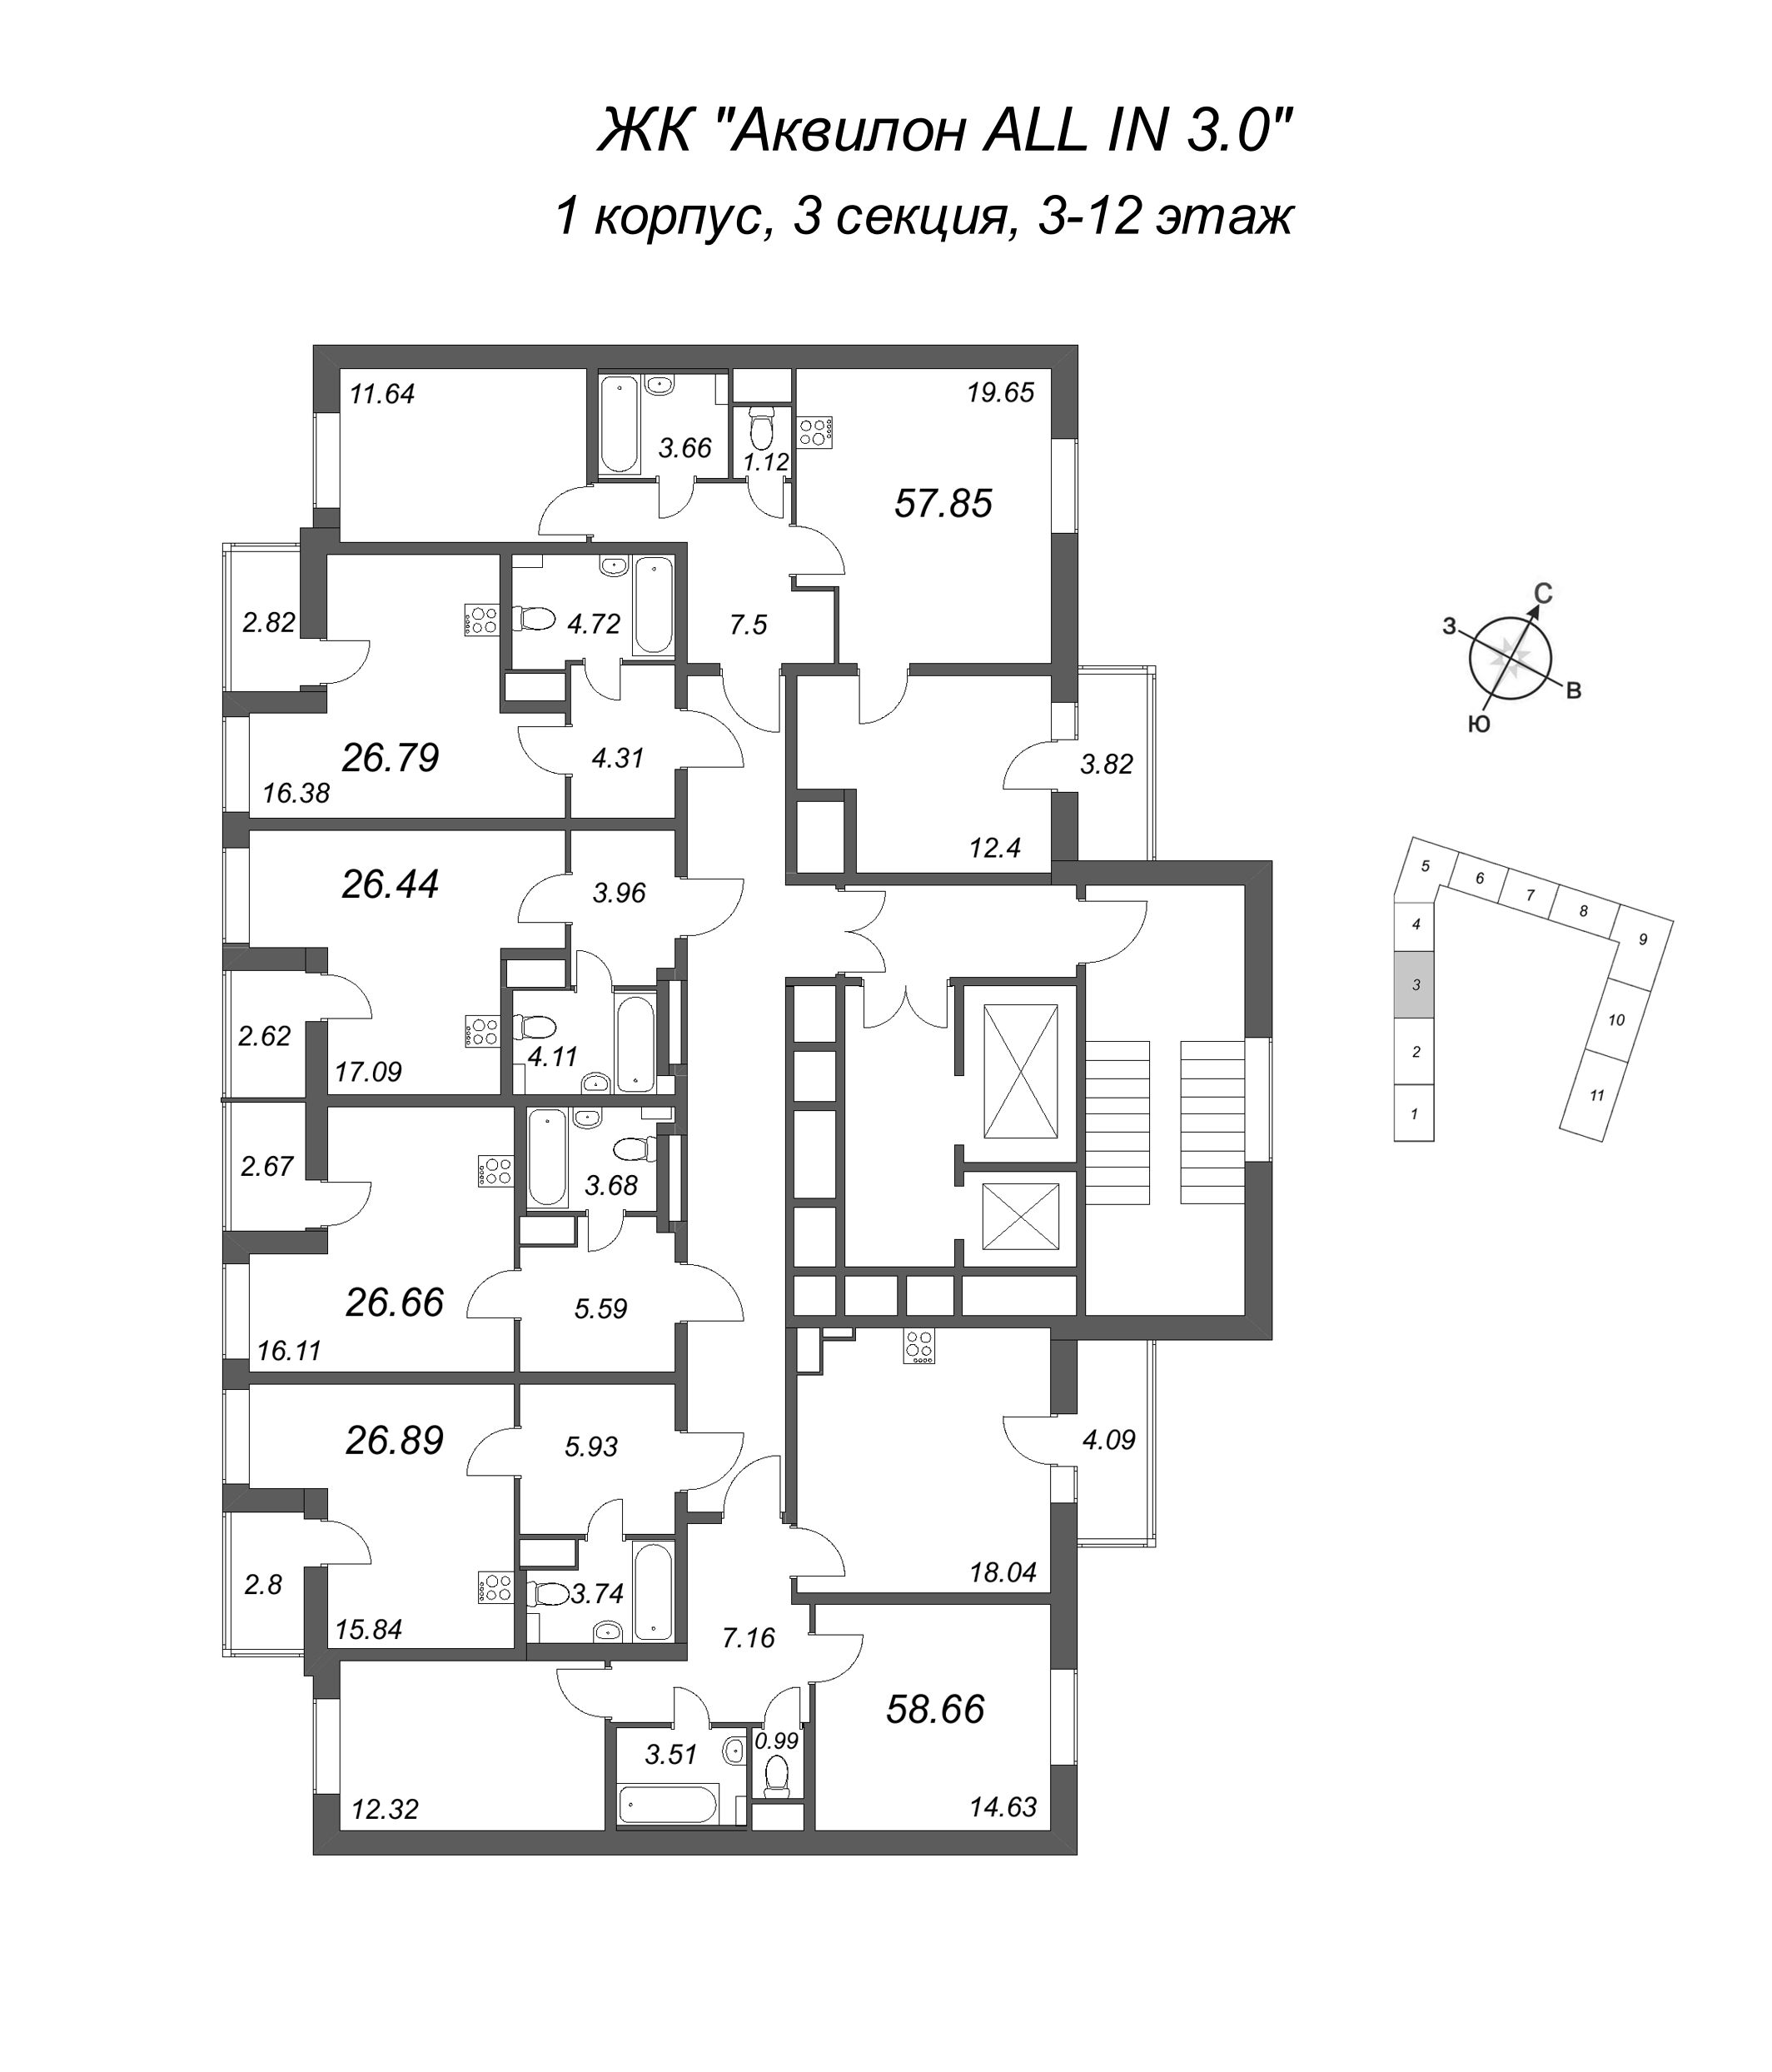 3-комнатная (Евро) квартира, 58.66 м² в ЖК "Аквилон All in 3.0" - планировка этажа